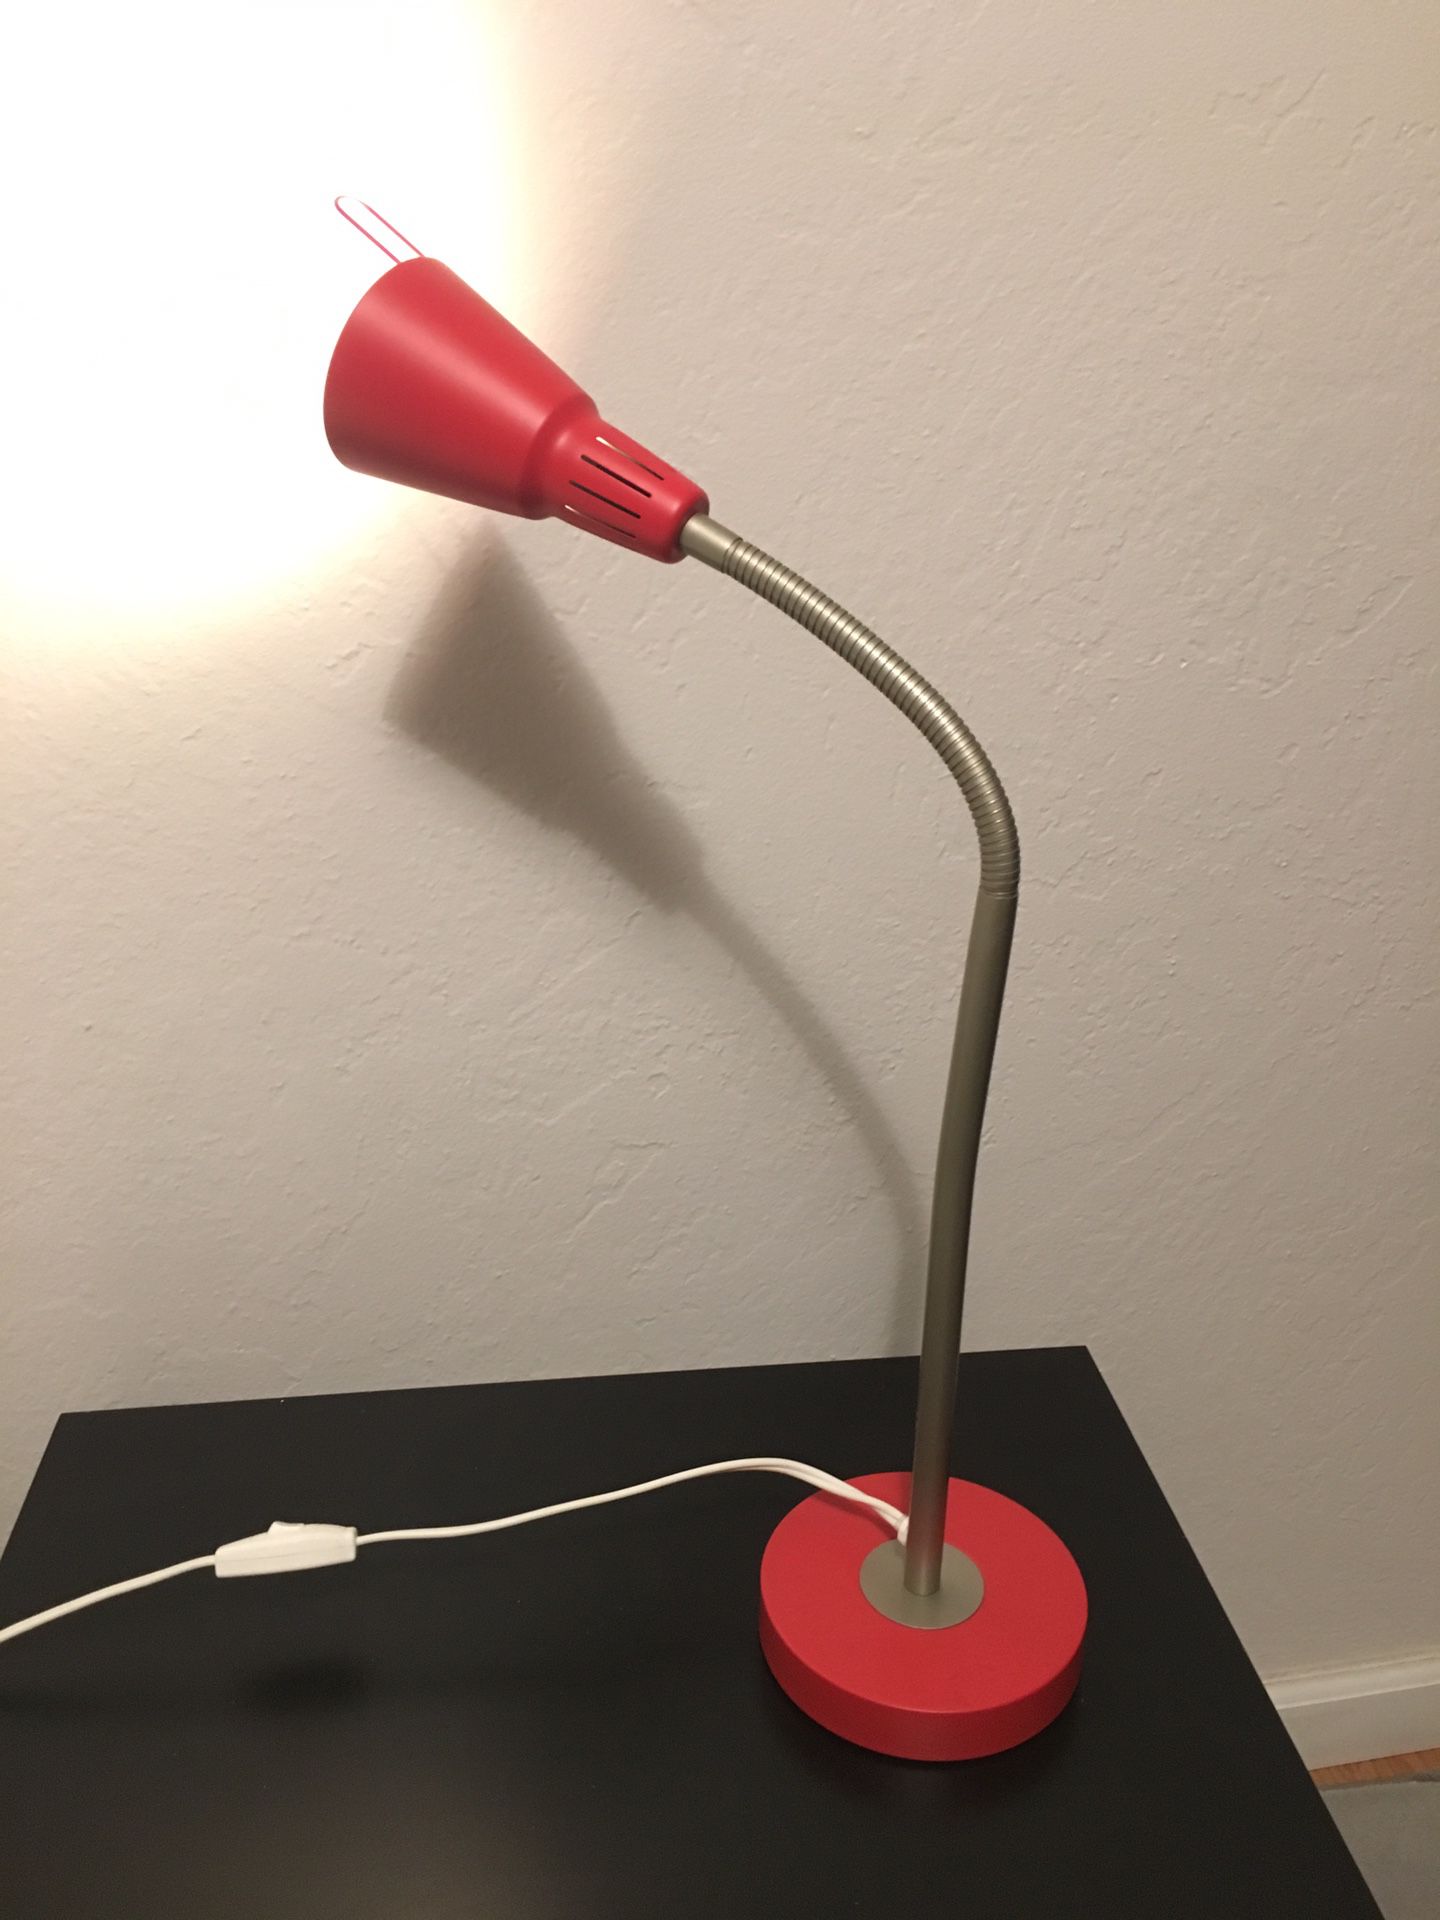 Desk / nightstand lamp